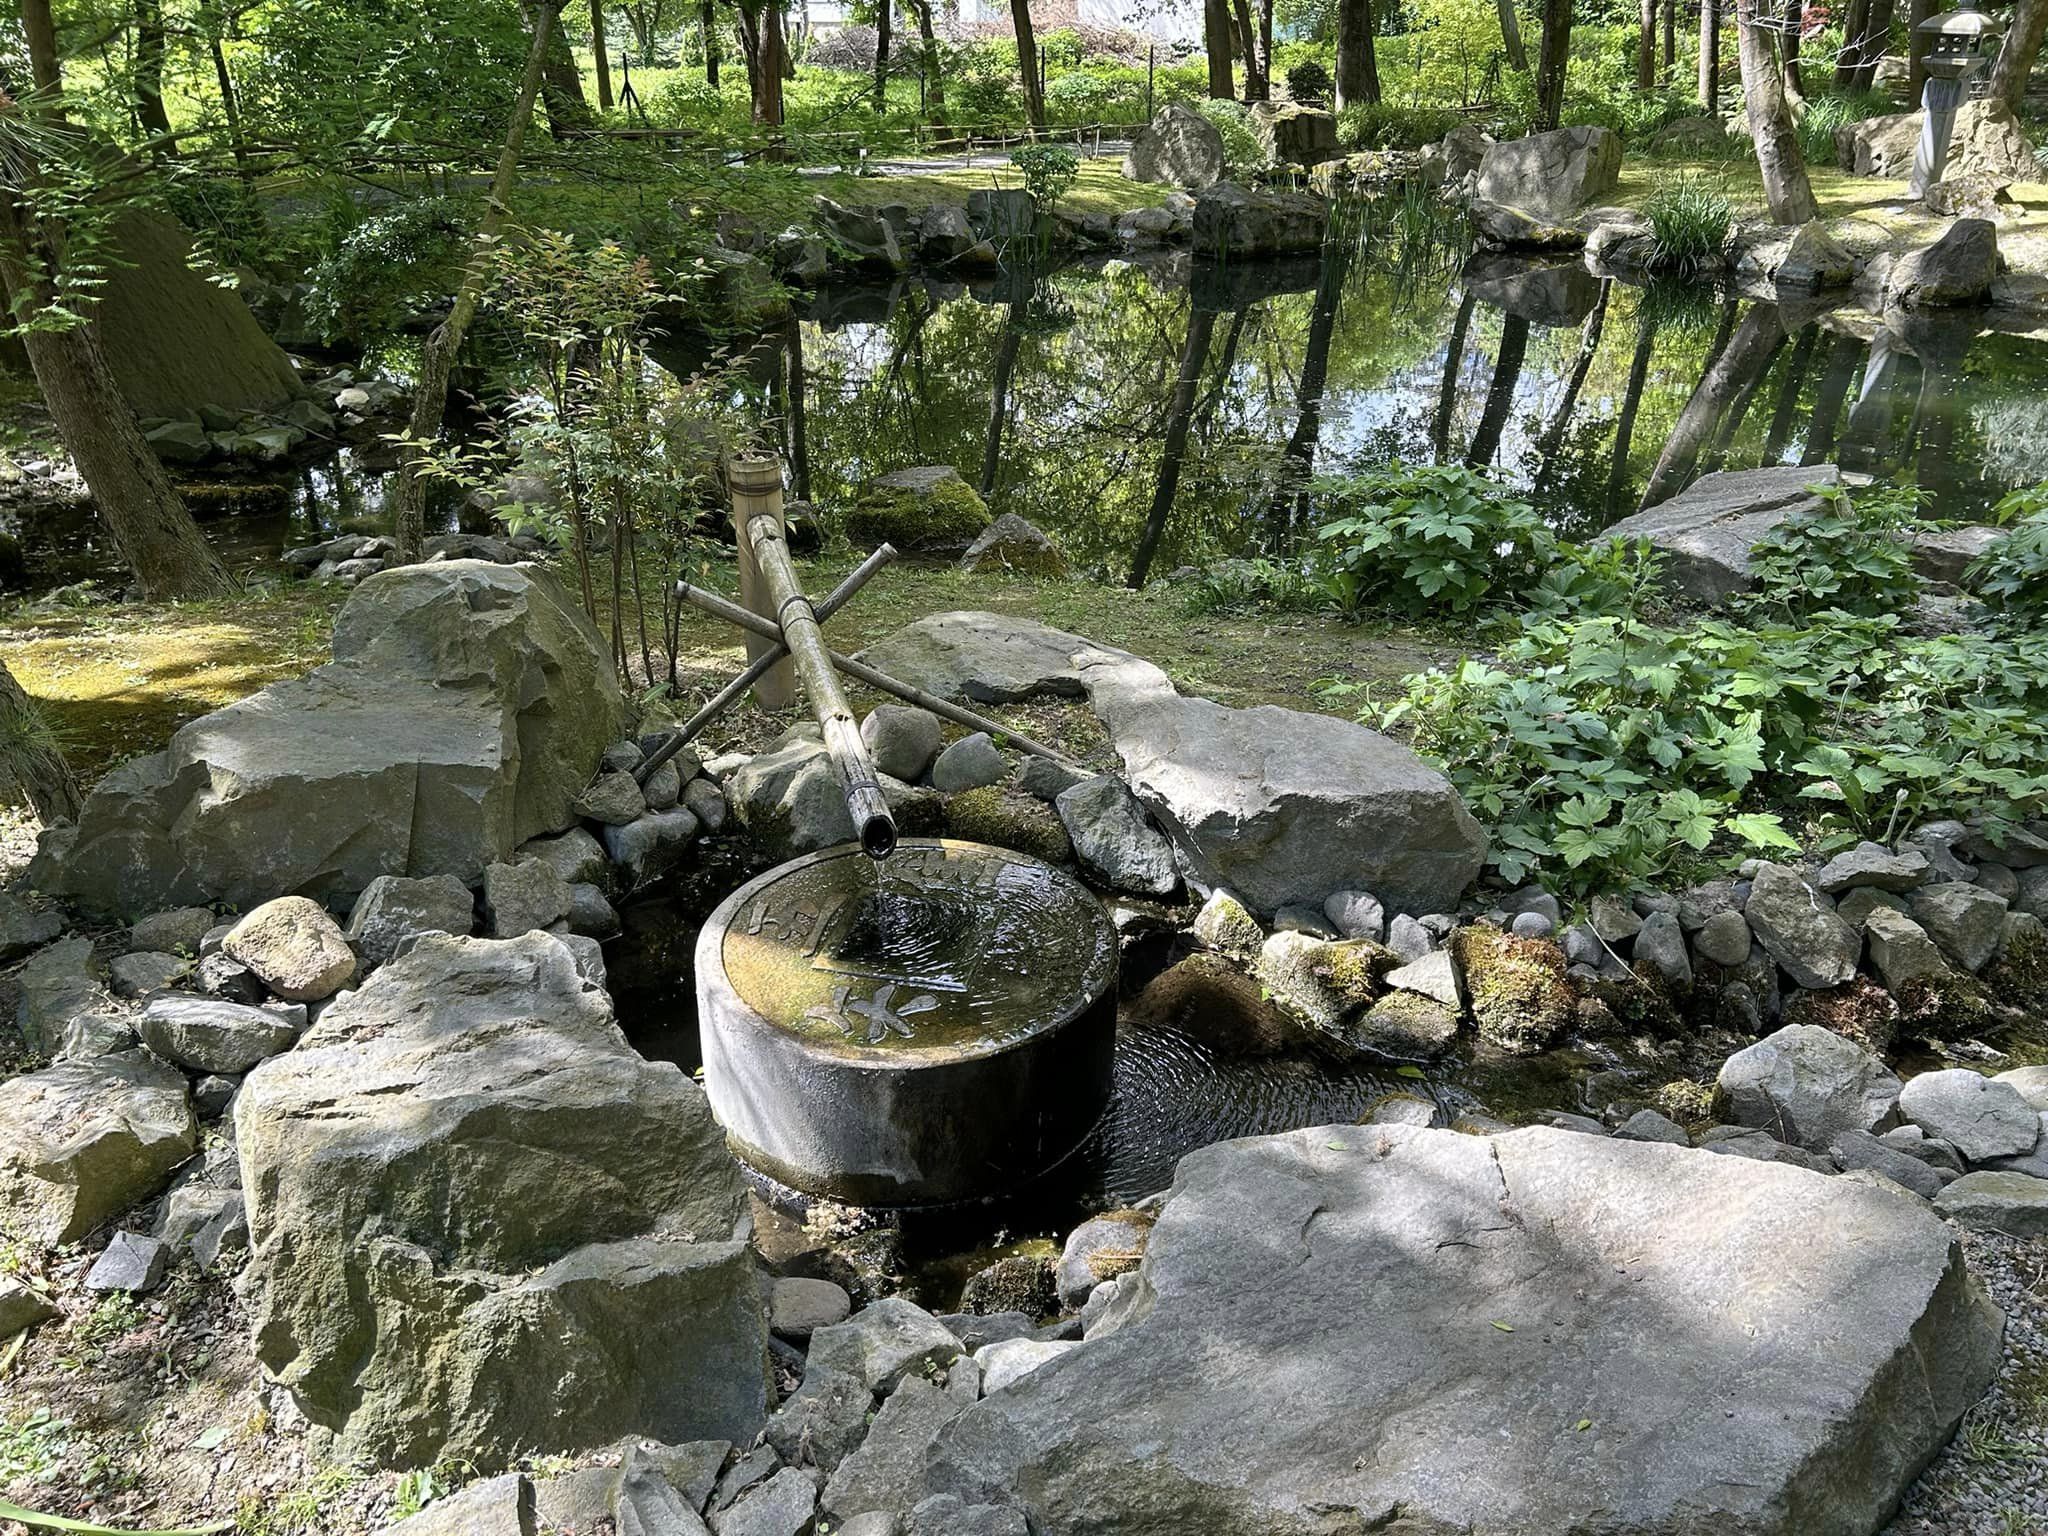 Rejtett kis japánkert Szentendrén: a csend, a nyugalom, a harmónia titkos szigete